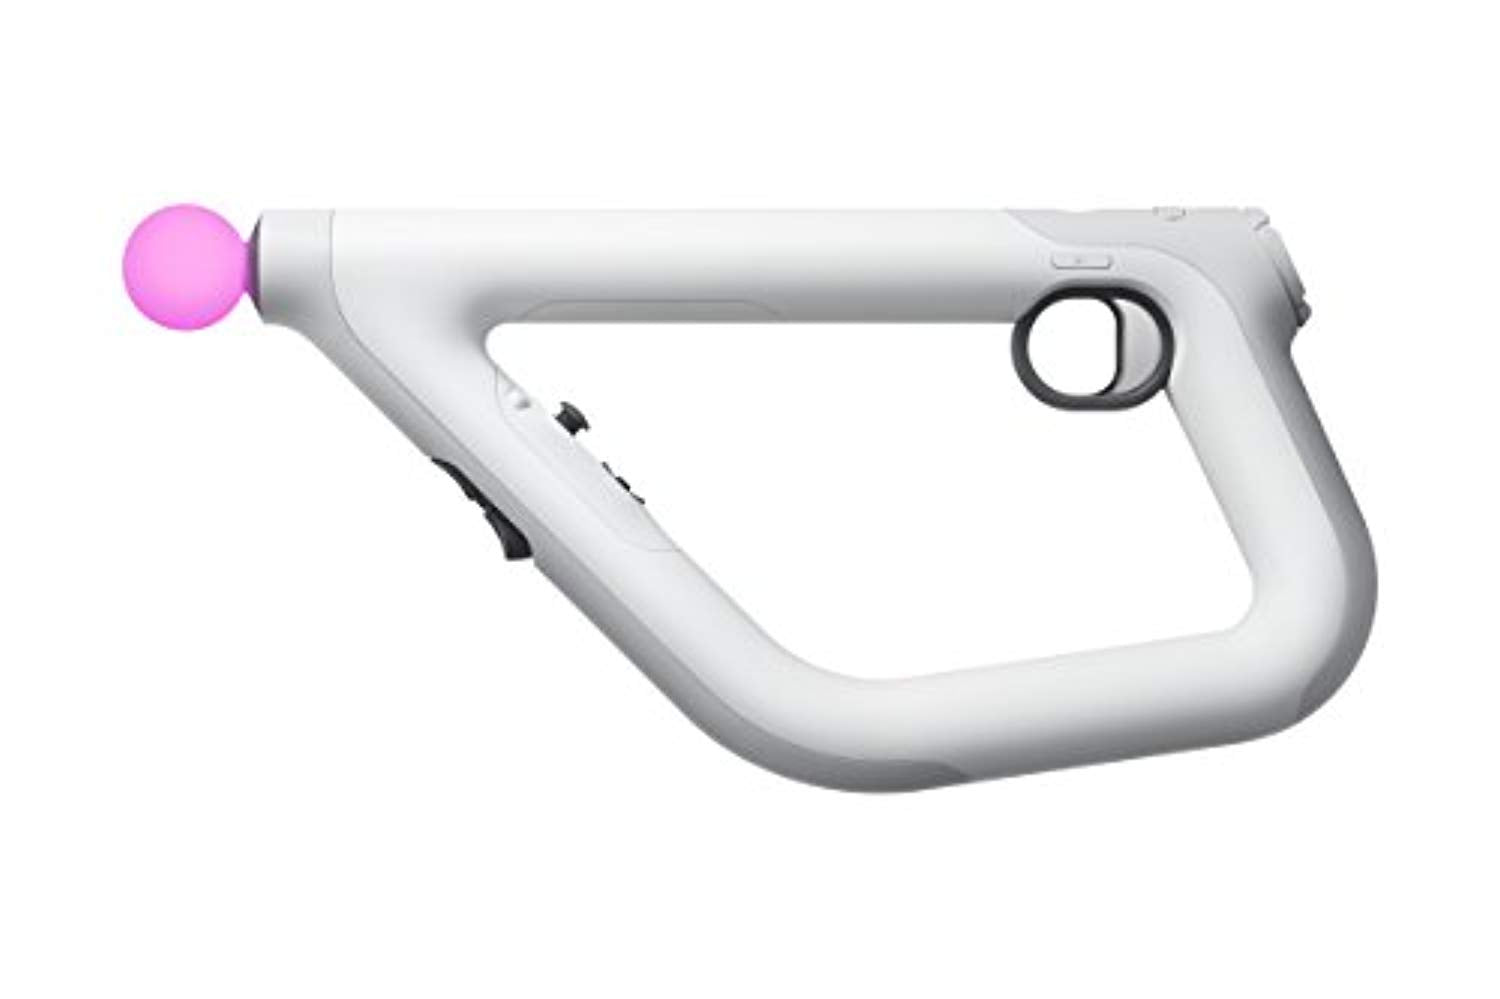 PlayStation VR Aim Controller (PSVR) - Offer Games